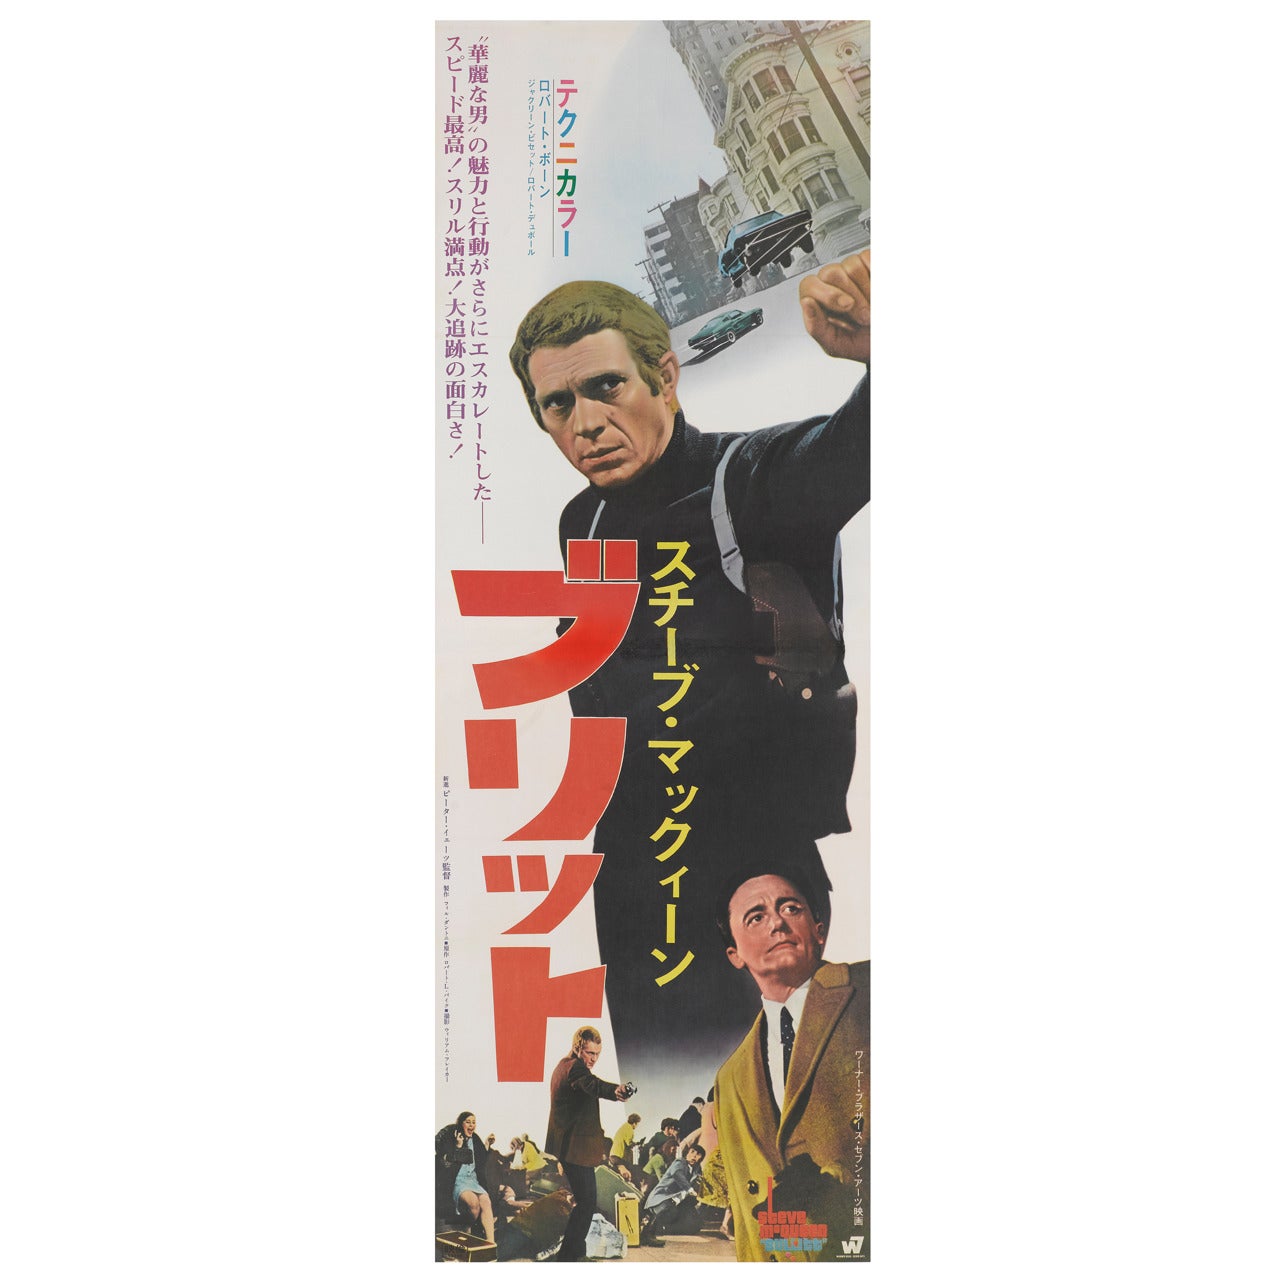 "Bullitt" Original Japanese Movie Poster